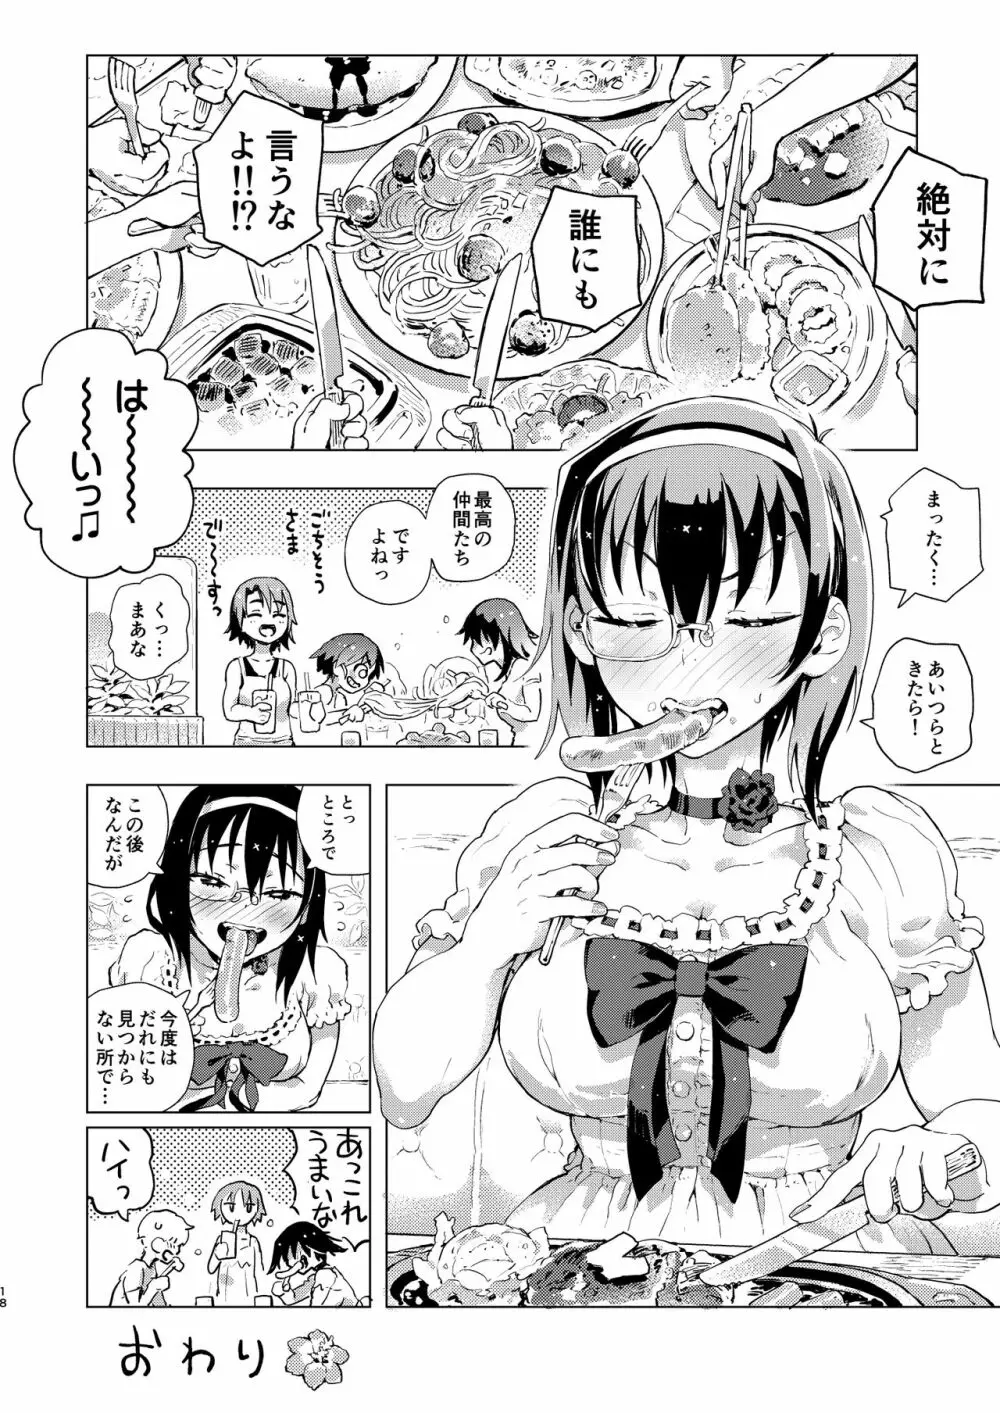 MOMOUMIX -桃ちゃんと海でセックスする本- Page.19